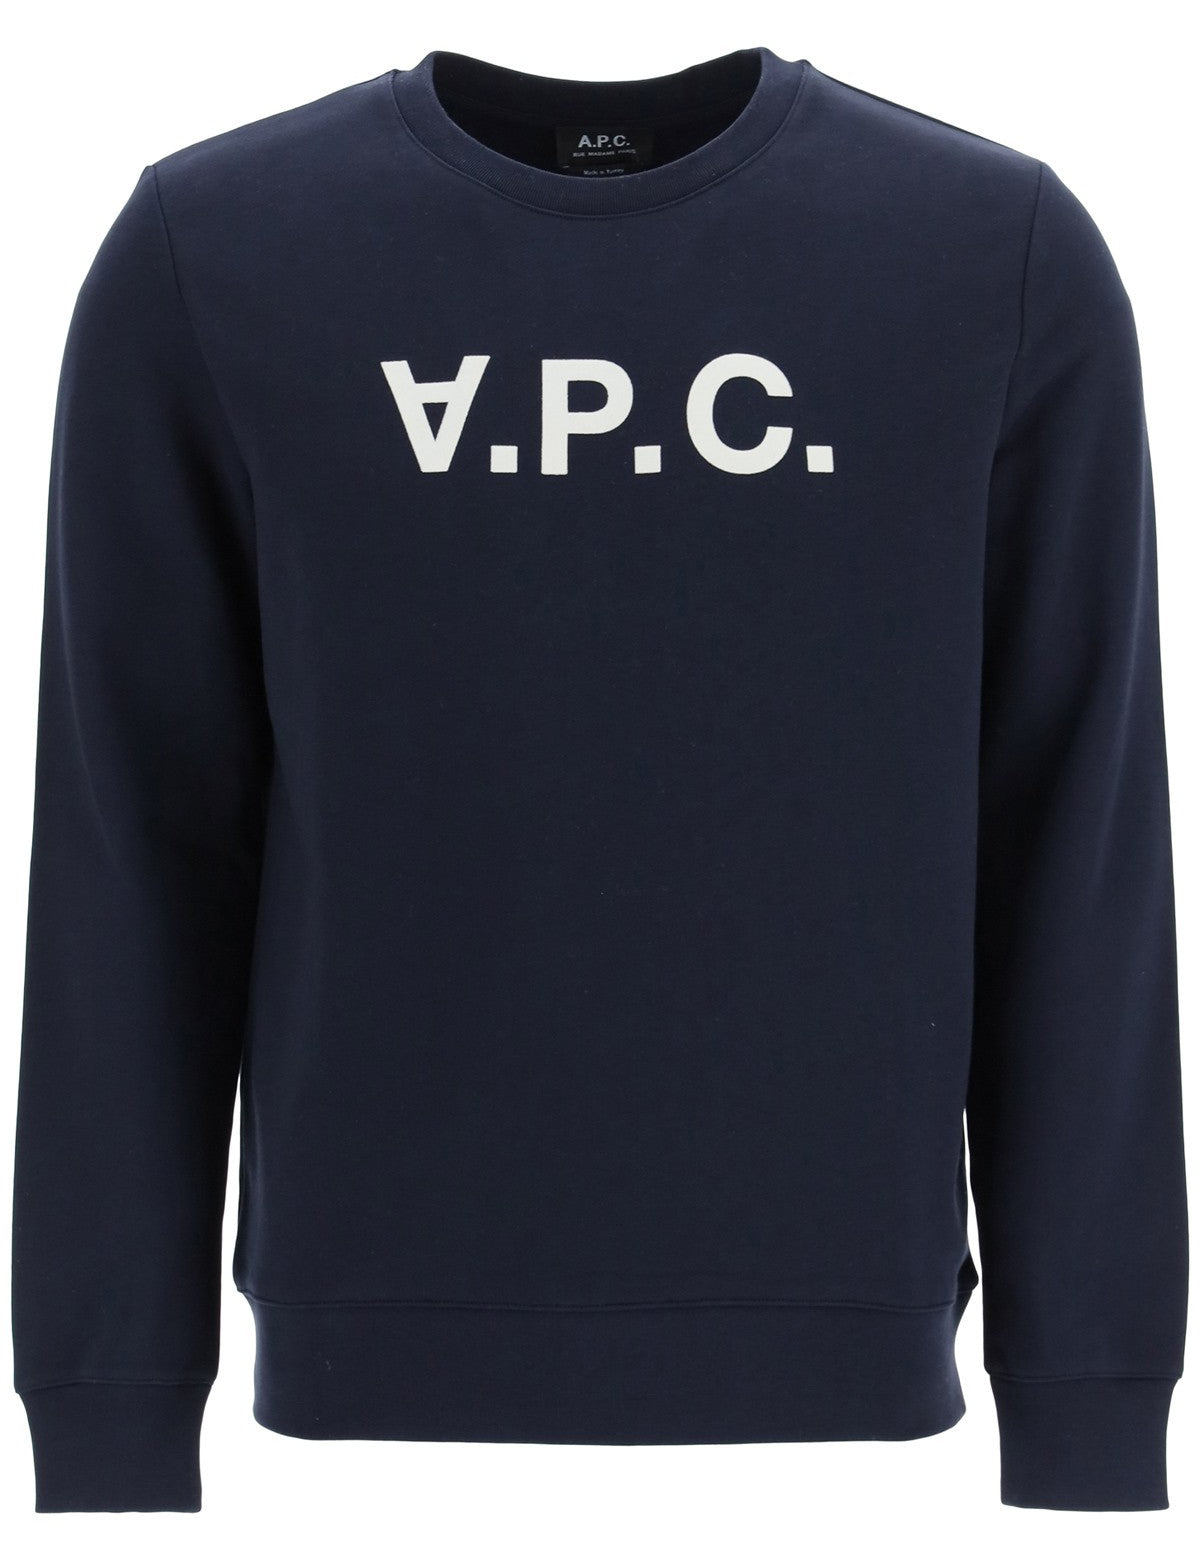 apc-flock-vpc-logo-sweatshirt_51d99556-a764-41d8-99bc-8f4d24642405.jpg